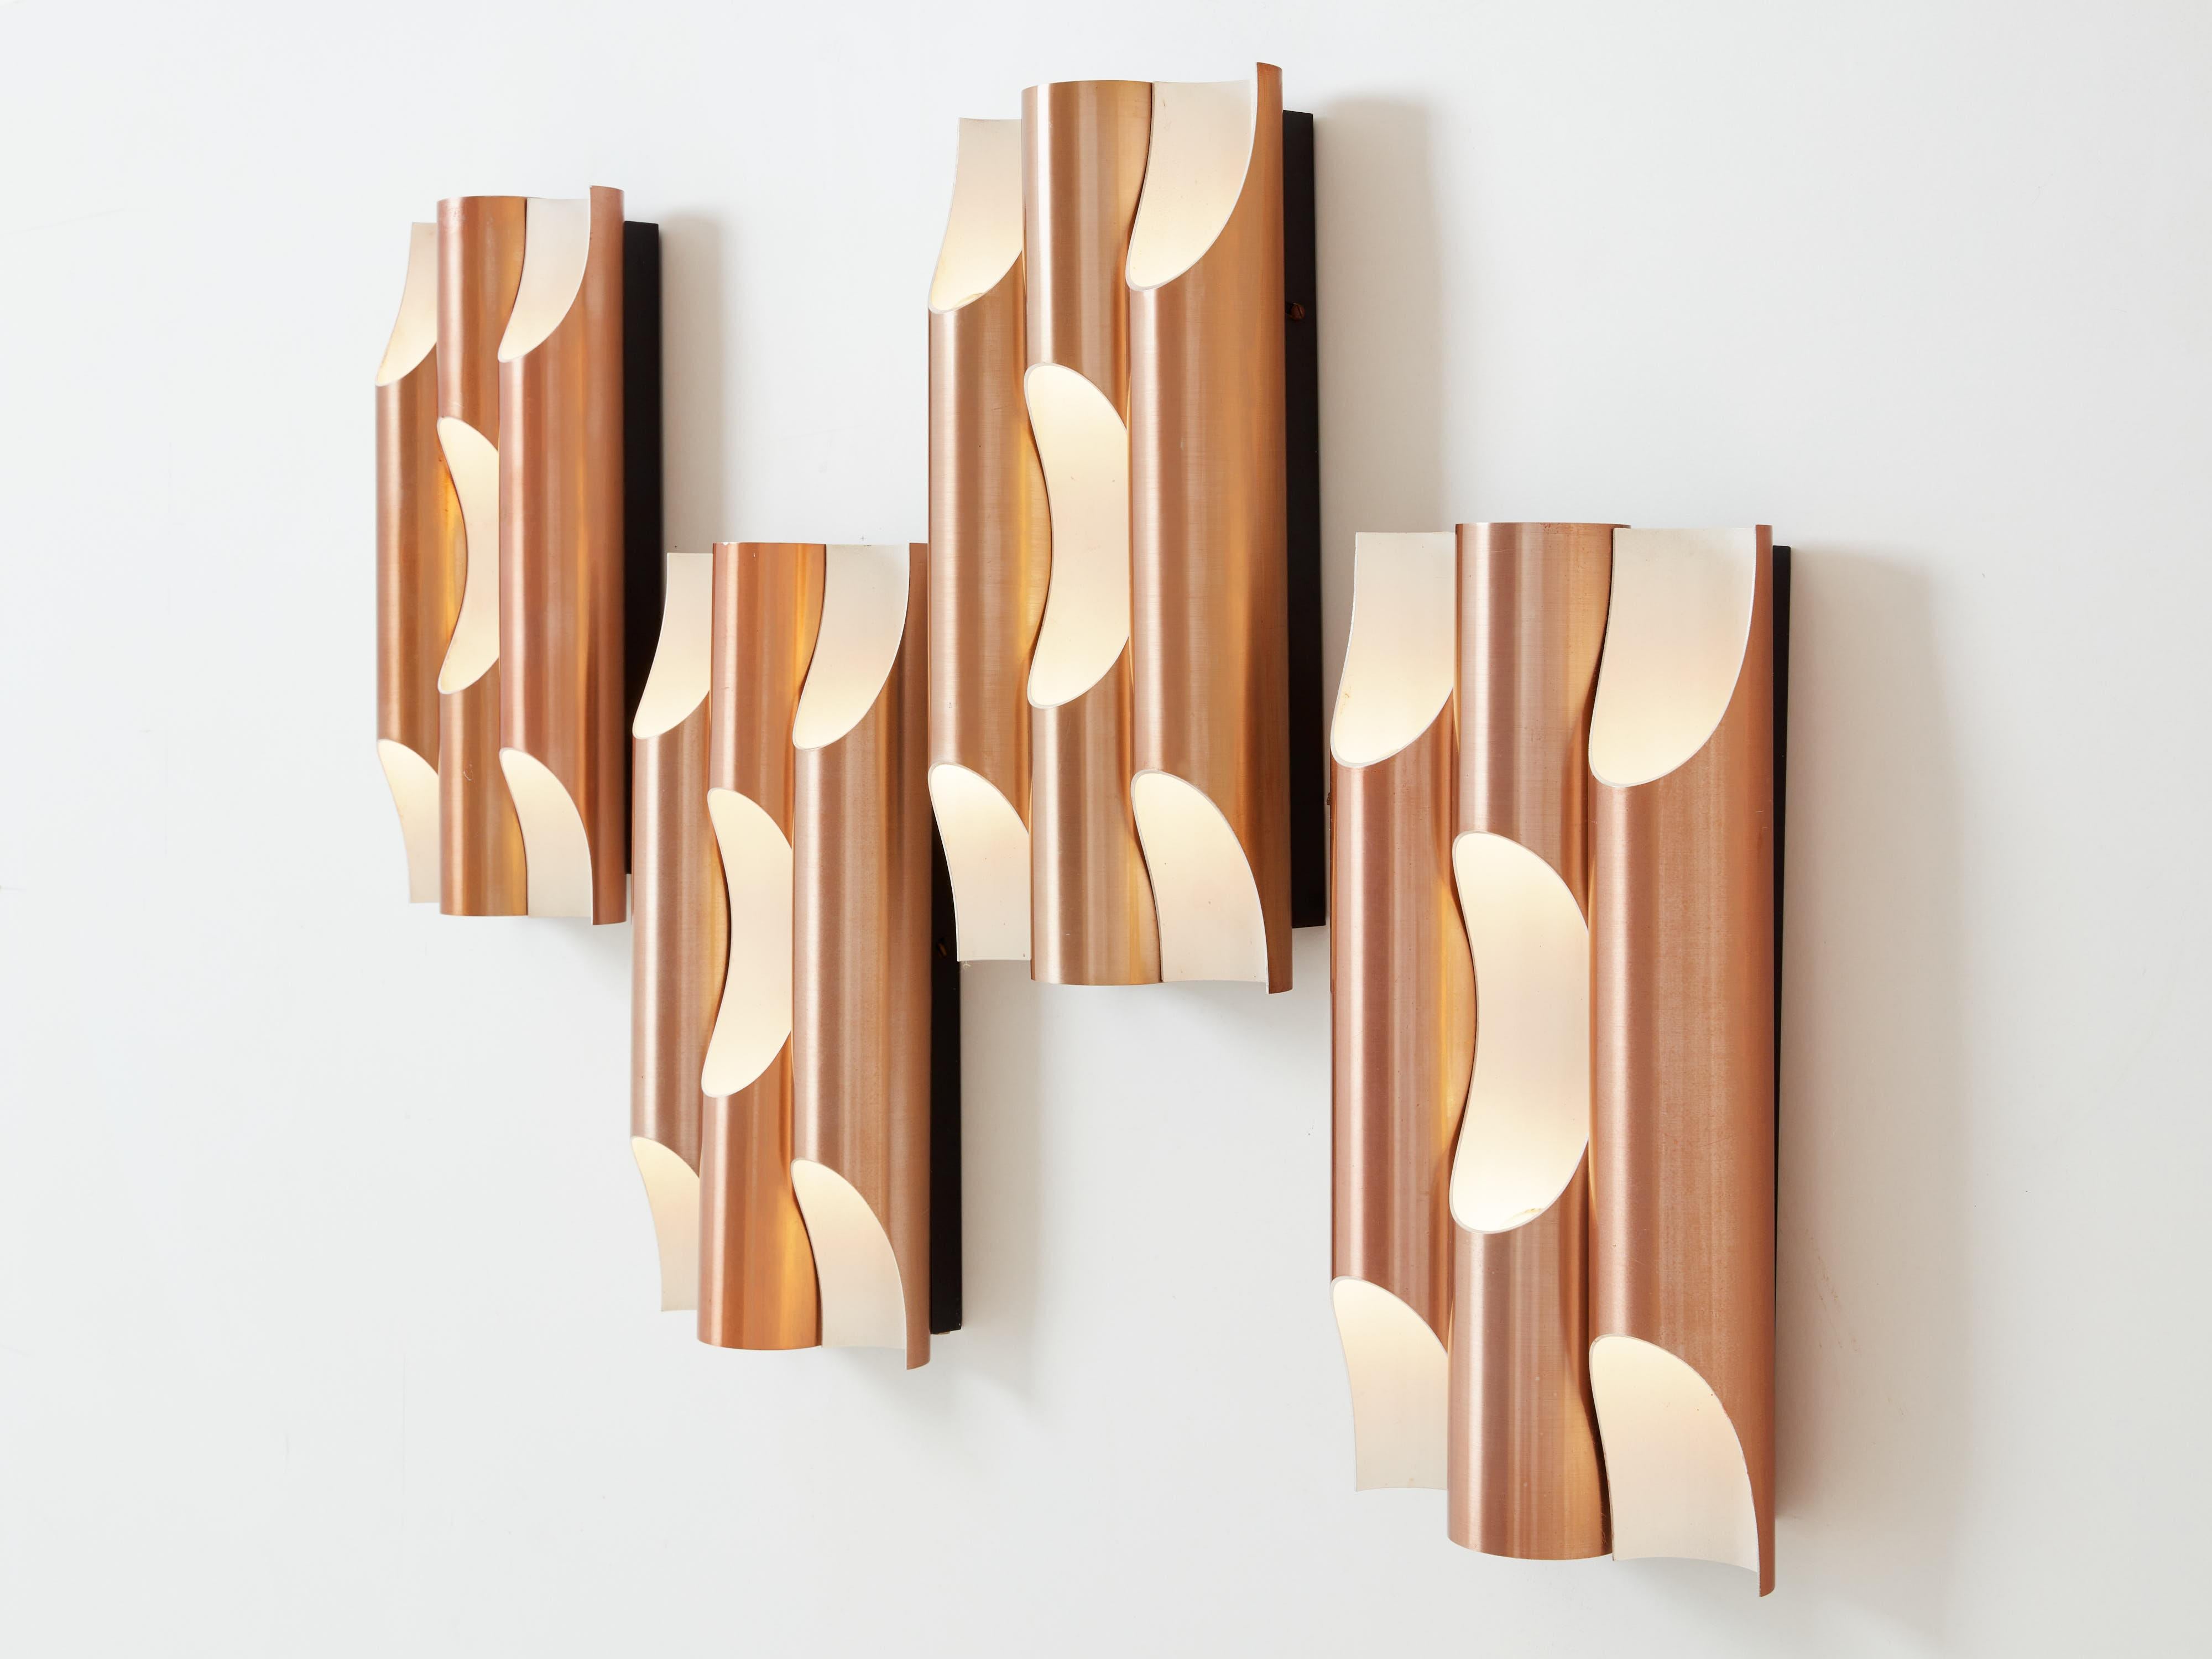 Diese schönen Fuga-Wandleuchten wurden Ende der 1950er Jahre von der finnischen Architektin Maija Liisa Komulainen für RAAK Amsterdam entworfen. Jede Wandleuchte besteht aus drei Röhren, die wie Orgelpfeifen gestaltet sind, aus Aluminium, außen